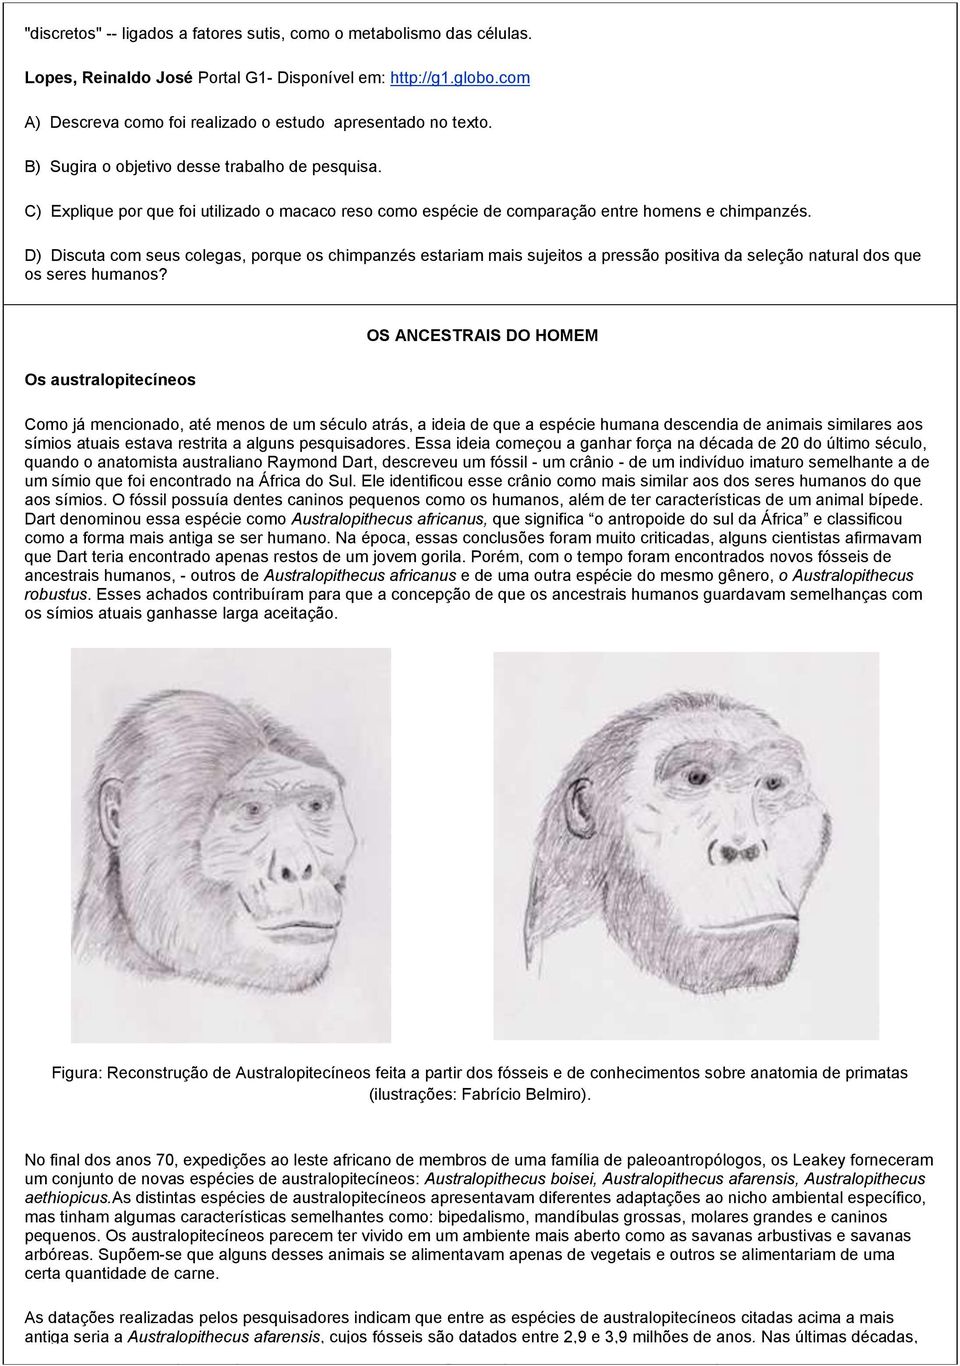 D) Discuta com seus colegas, porque os chimpanzés estariam mais sujeitos a pressão positiva da seleção natural dos que os seres humanos?